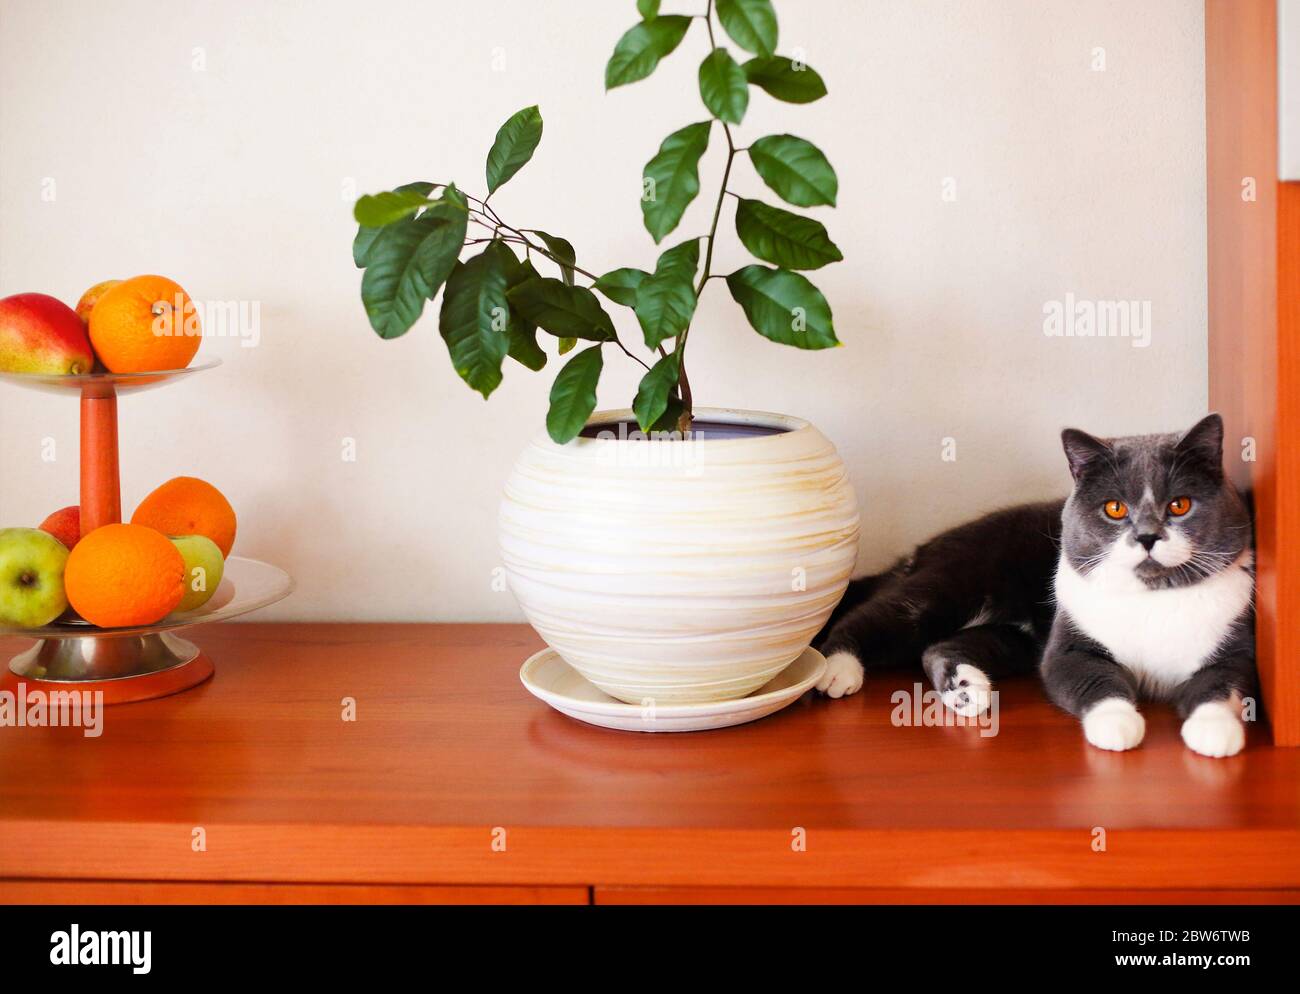 Süße ruhige flauschige Katze ruht auf Holzregal in der Nähe von grünen Pflanze in weißen Keramik-Topf und Vase mit frischen Früchten in gemütlichen Raum Stockfoto